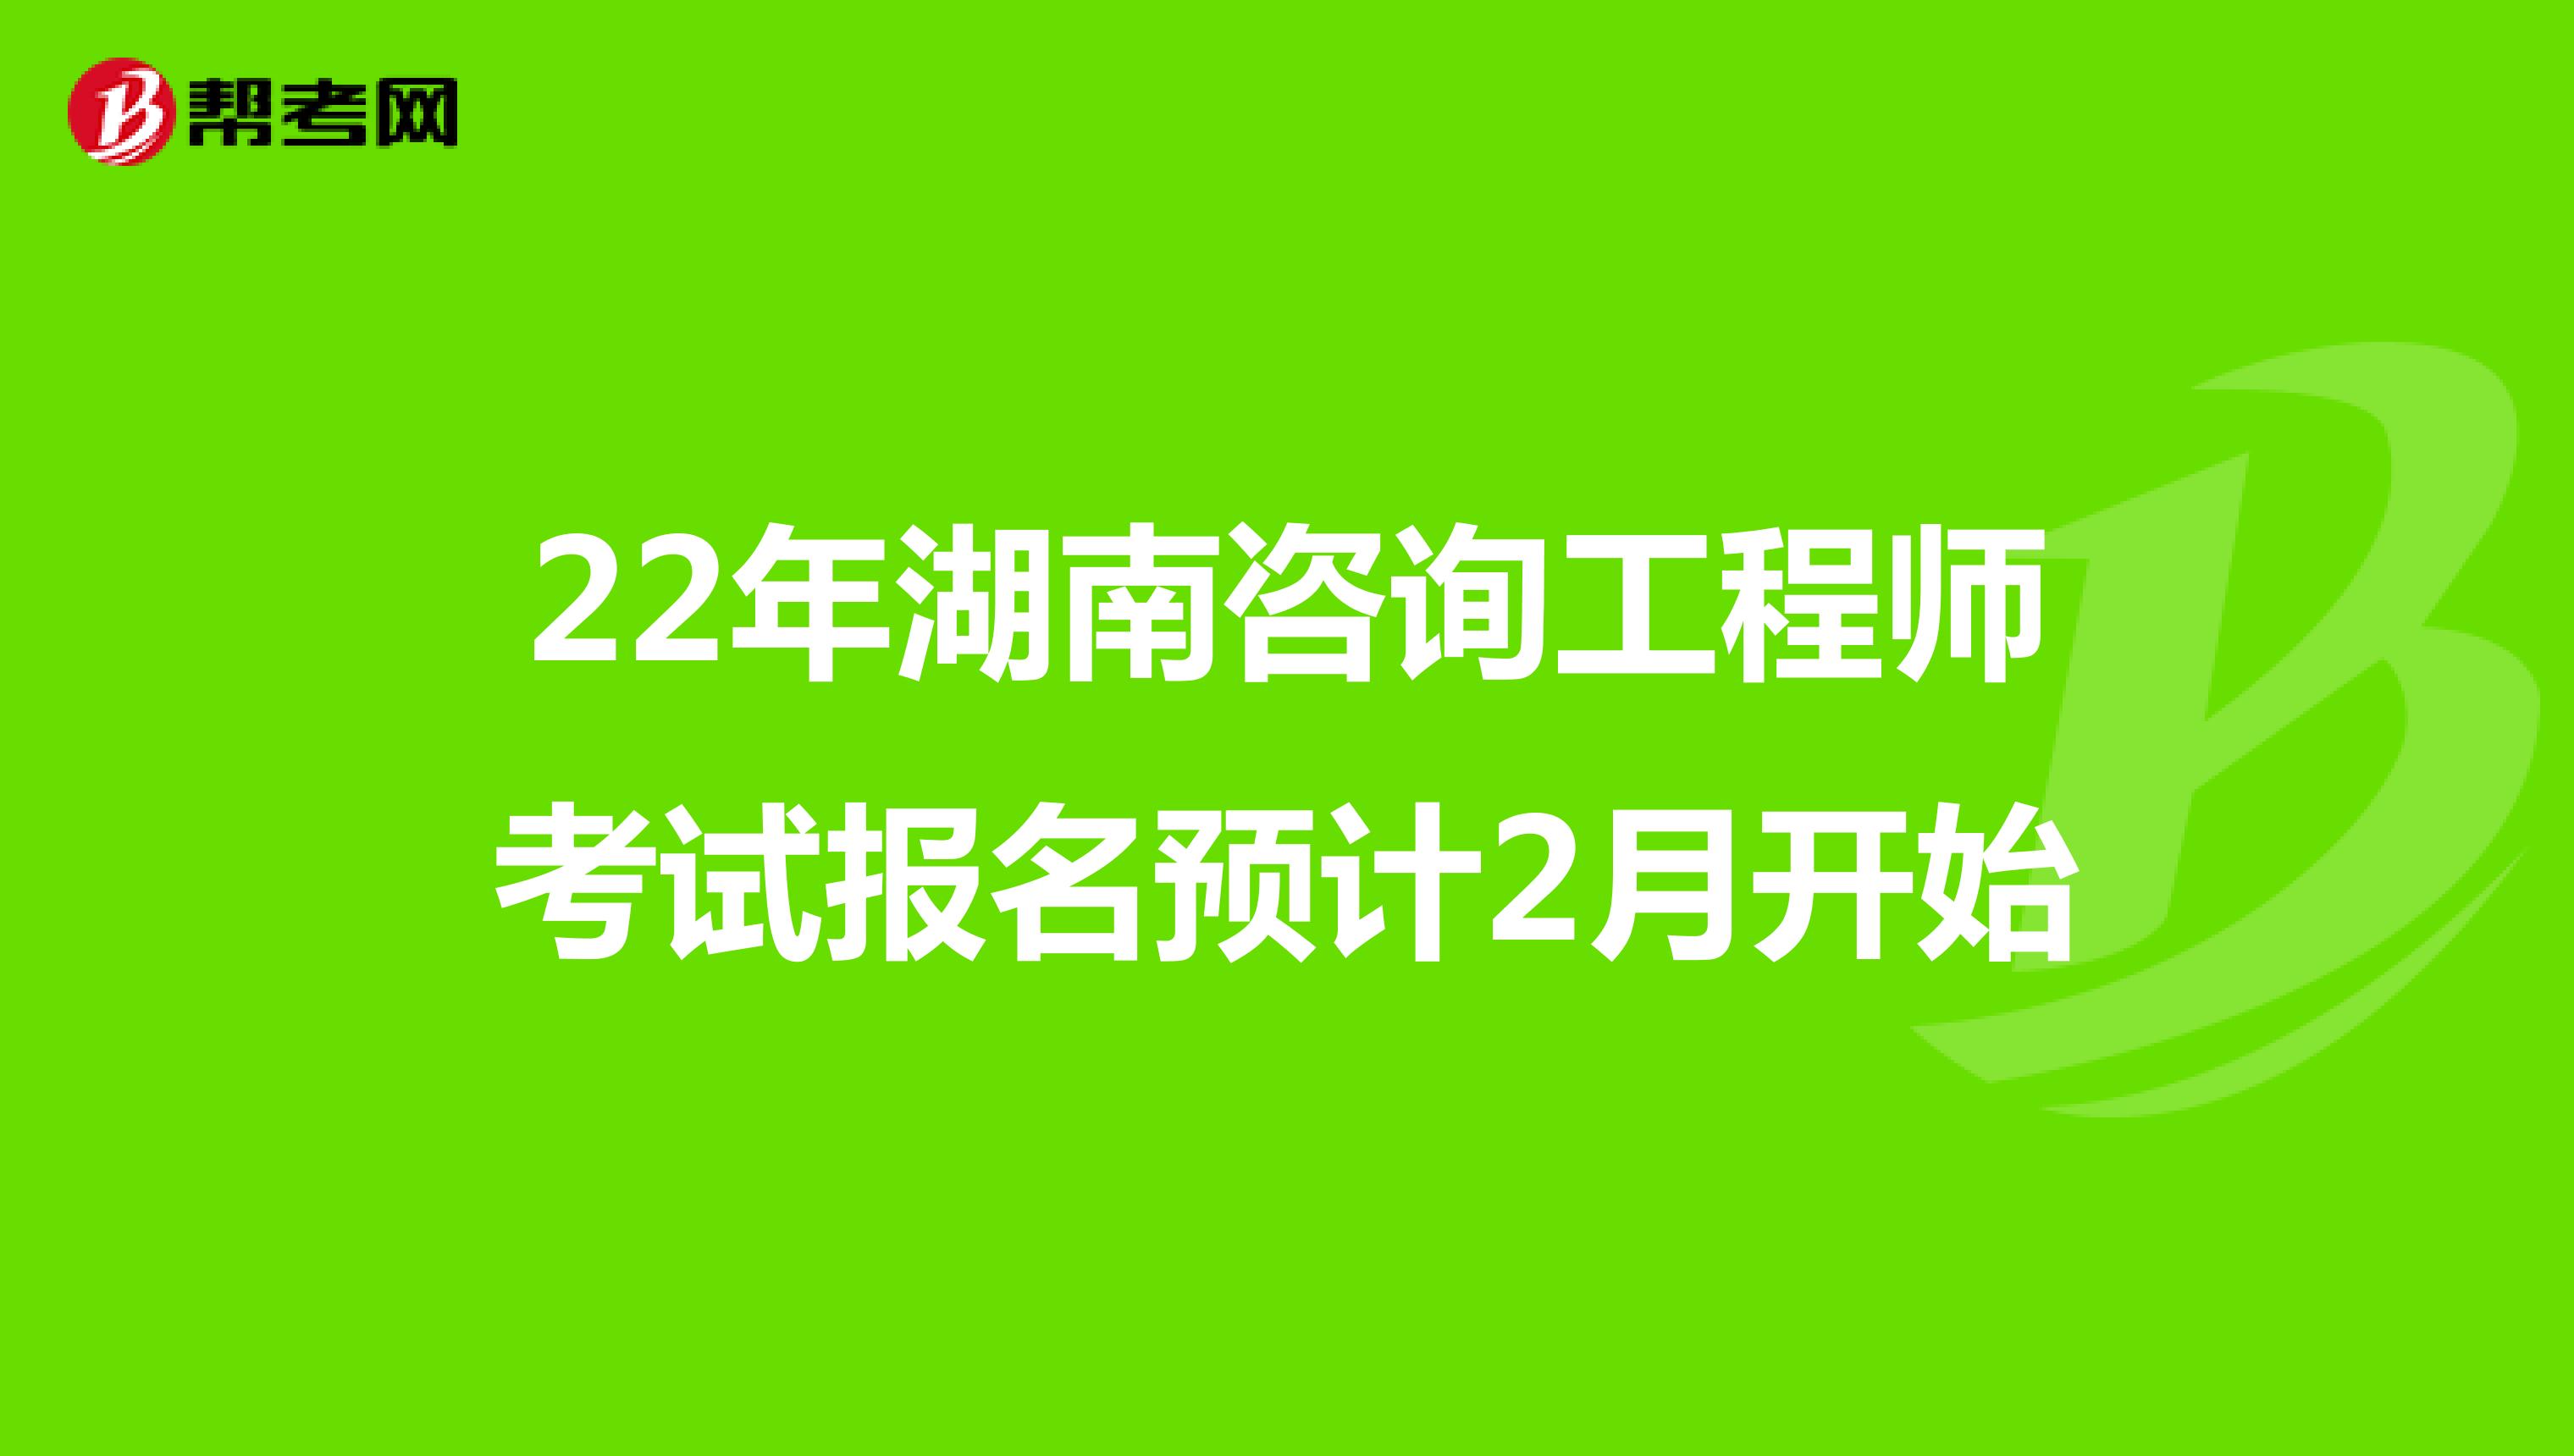 22年湖南咨询工程师考试报名预计2月开始